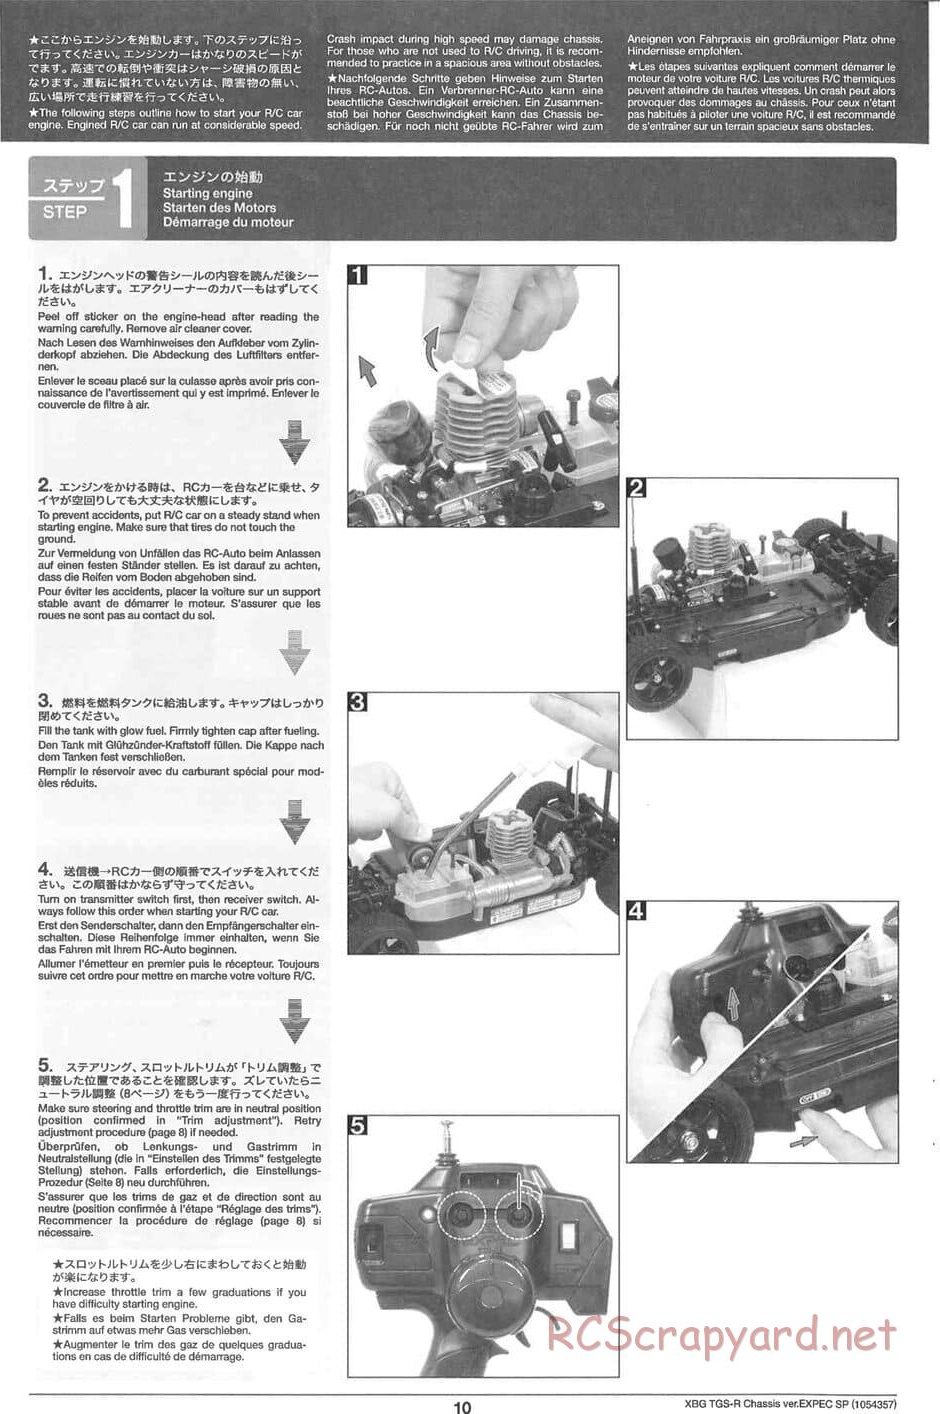 Tamiya - TGS-R Chassis - Manual - Page 10